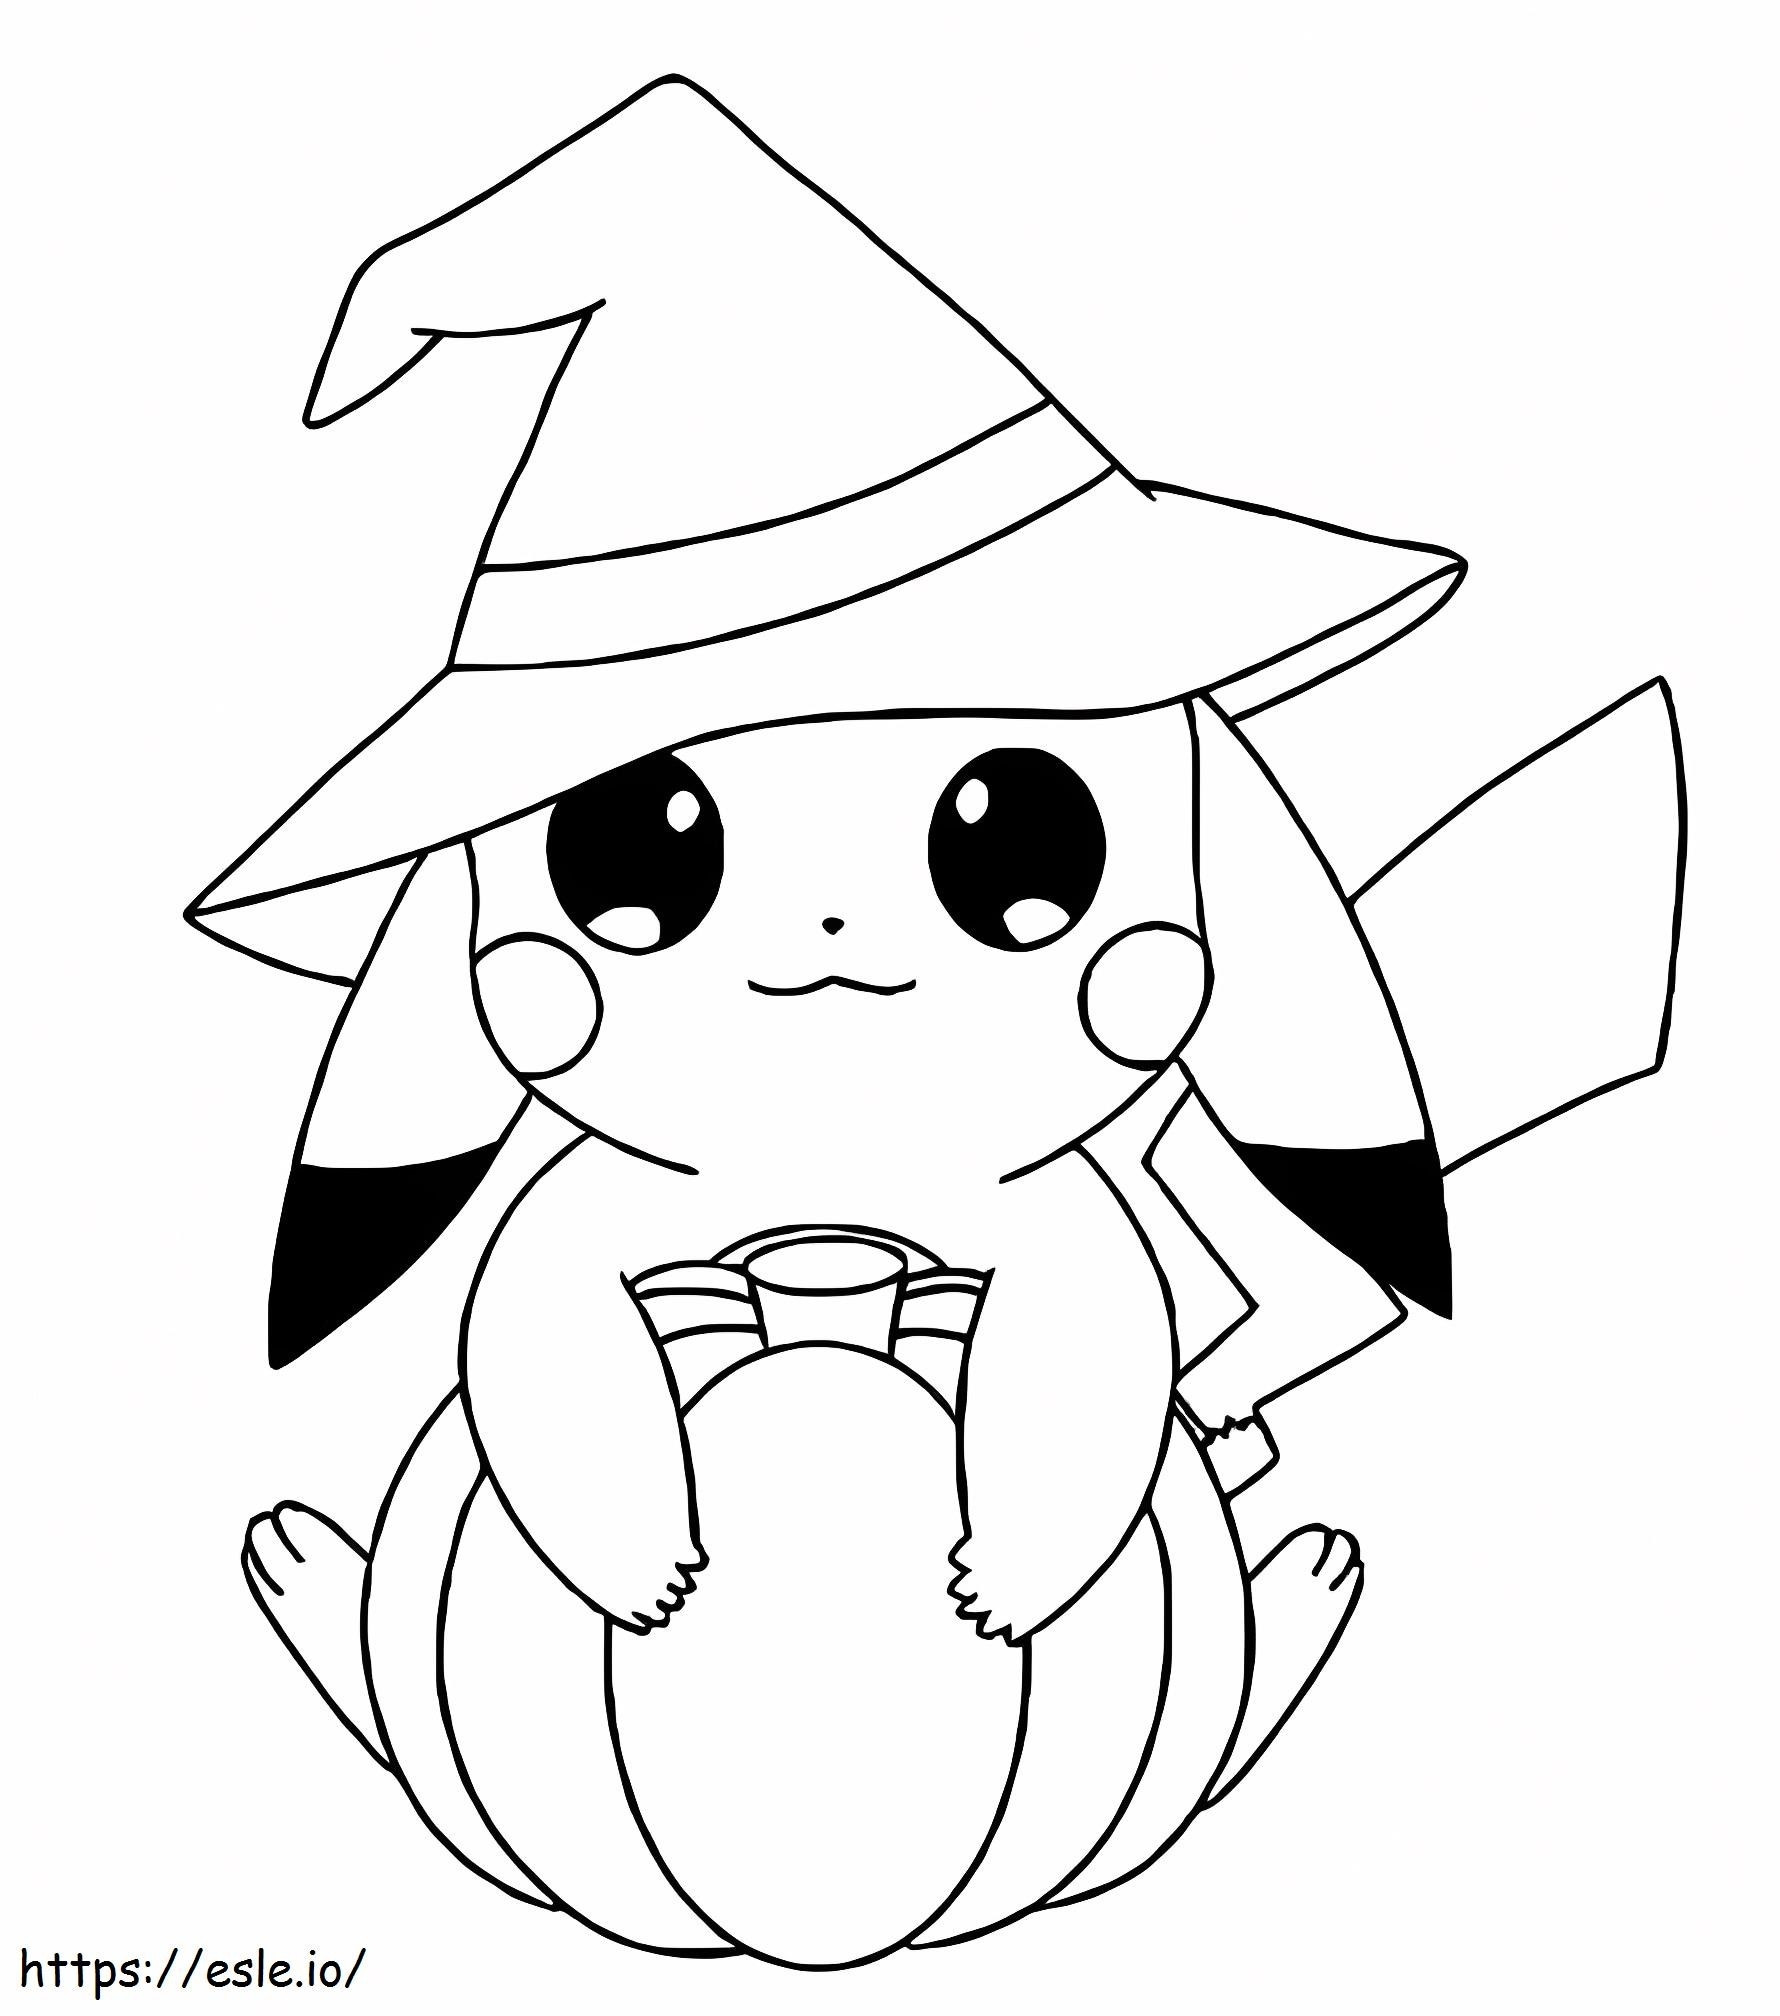 Süßes Pikachu an Halloween ausmalbilder